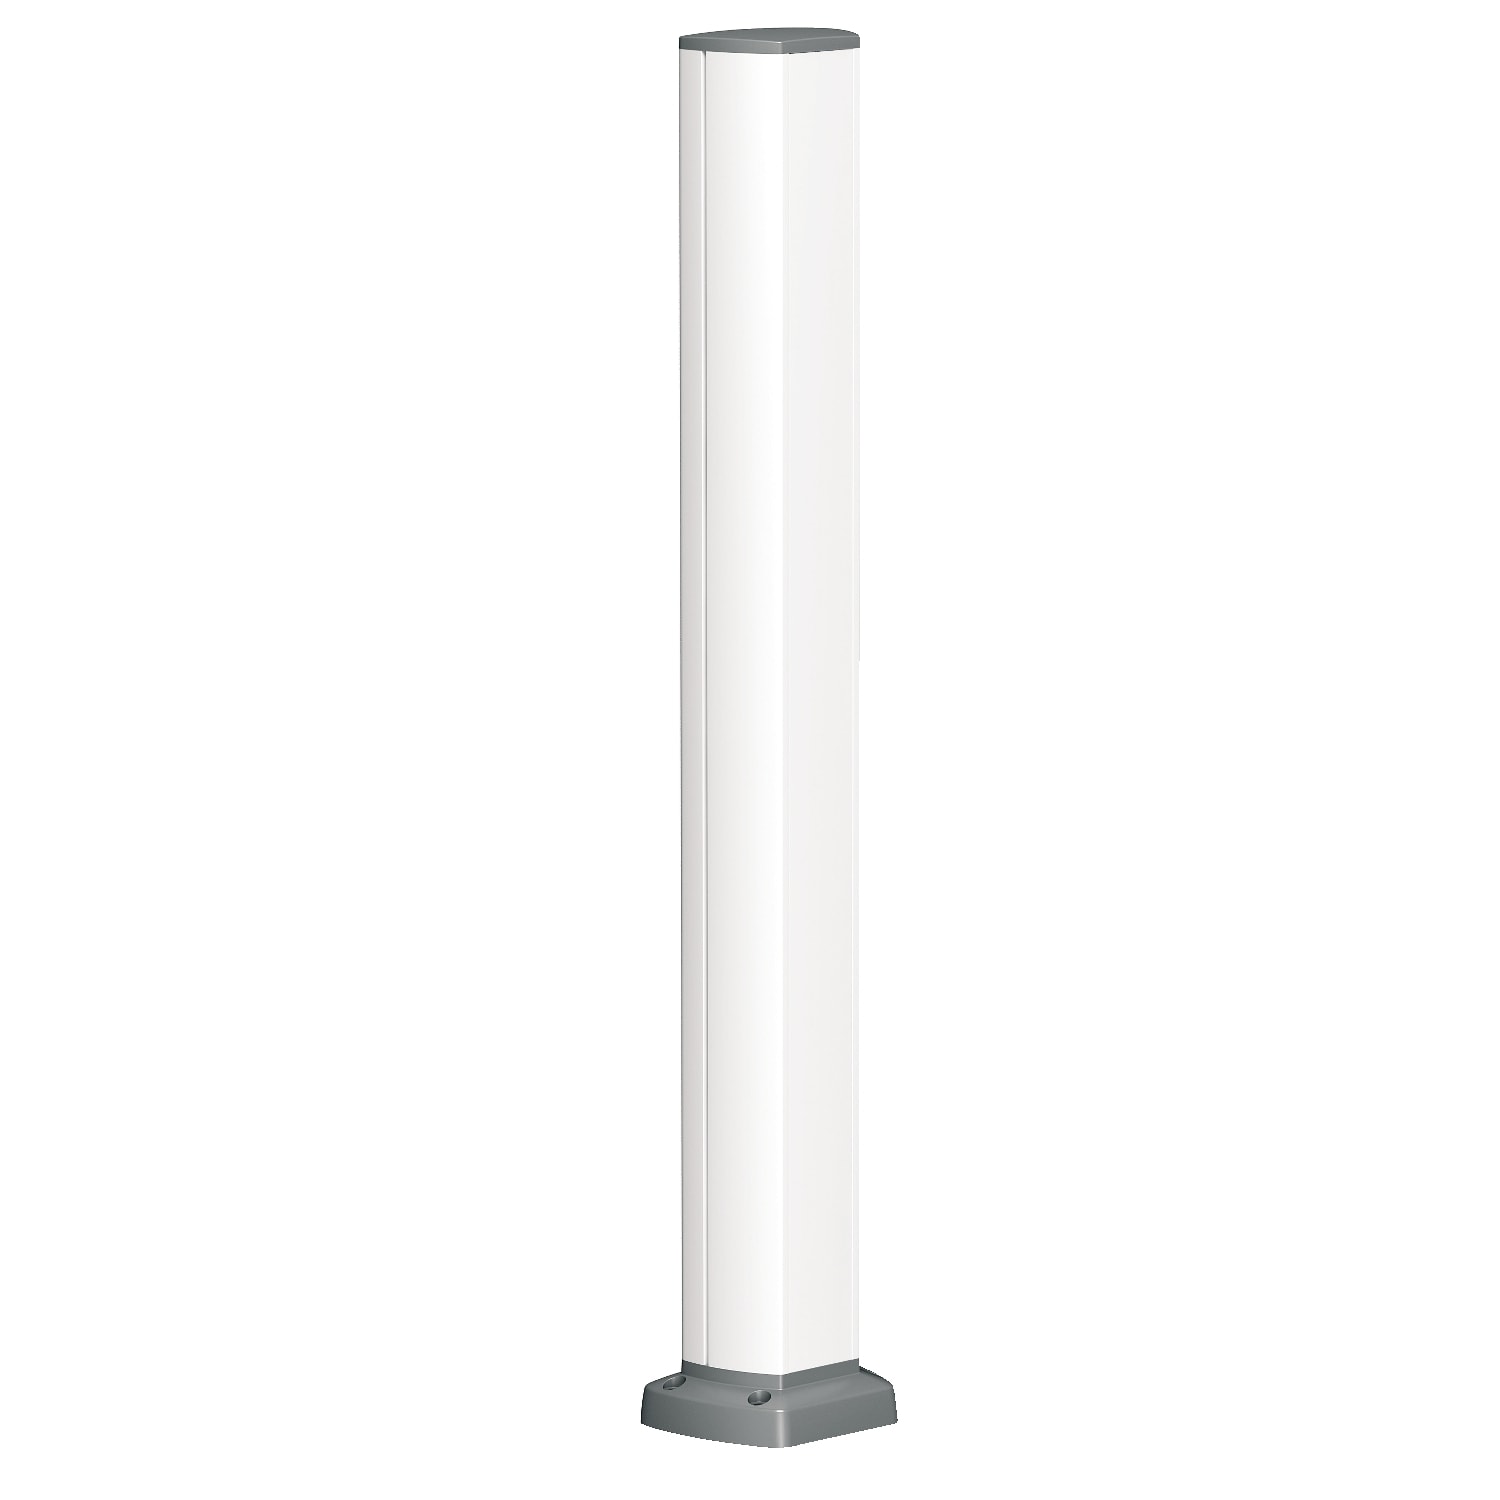 Schneider Electric - OptiLine 45 - colonnette aluminium laque blanc polaire - 1 face - 0,7 m